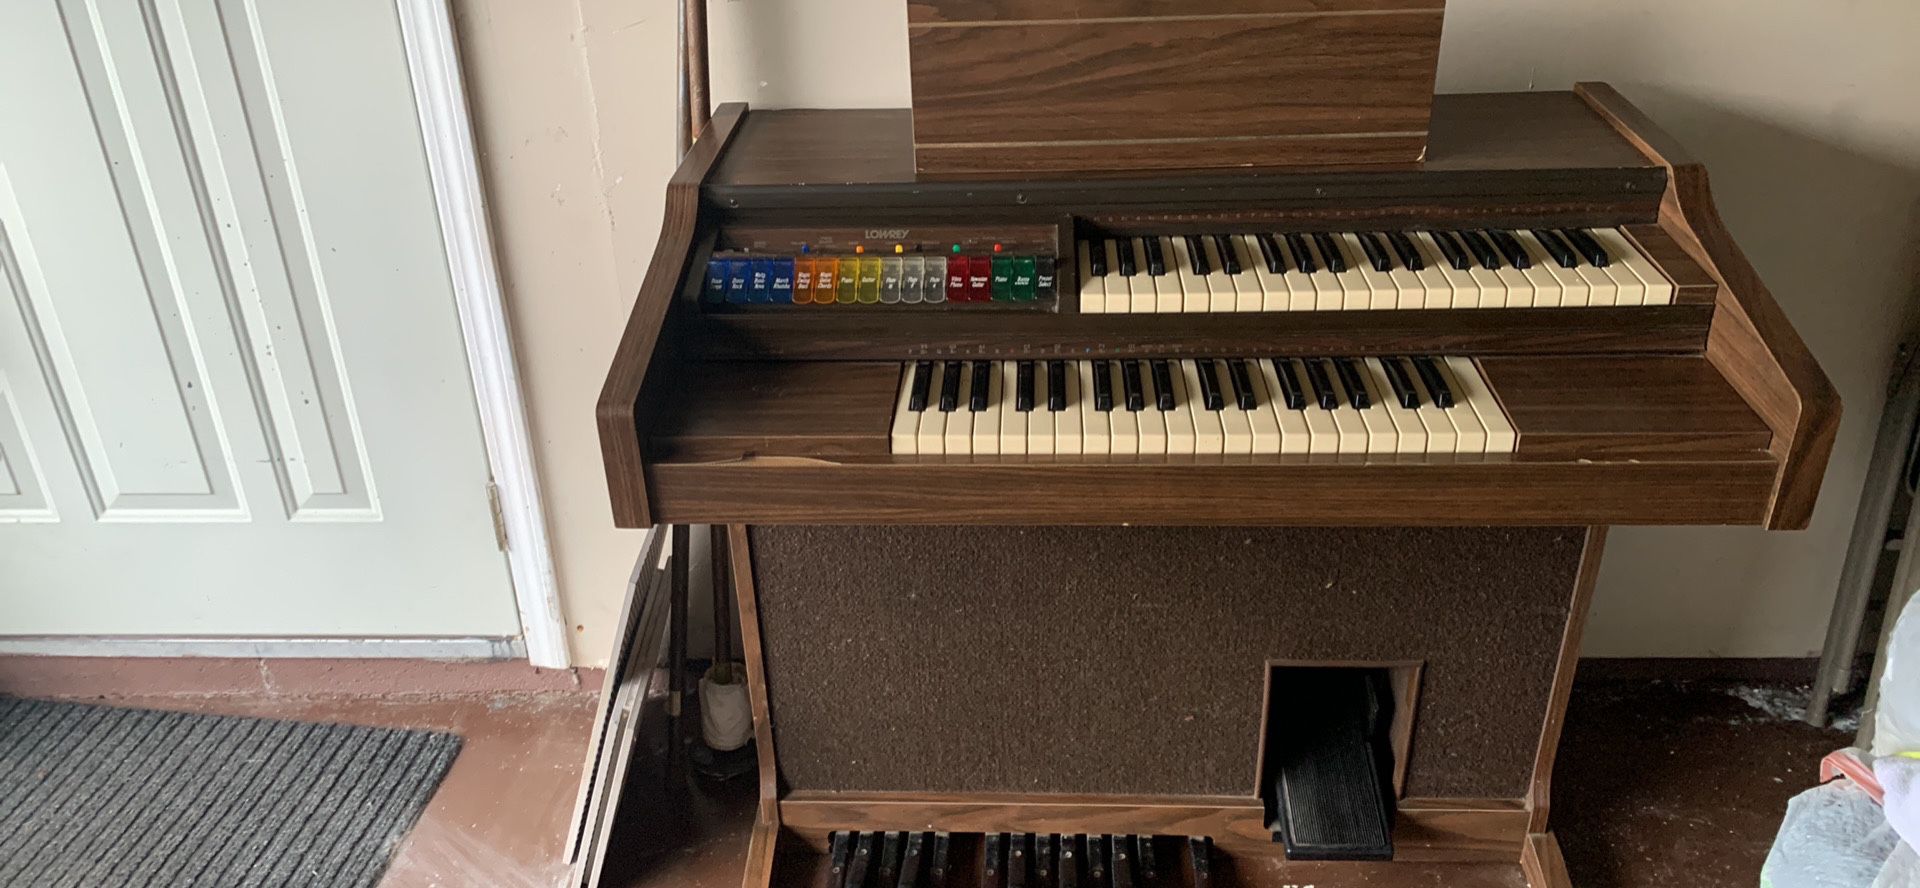 Very Nice Lowery Piano Organ